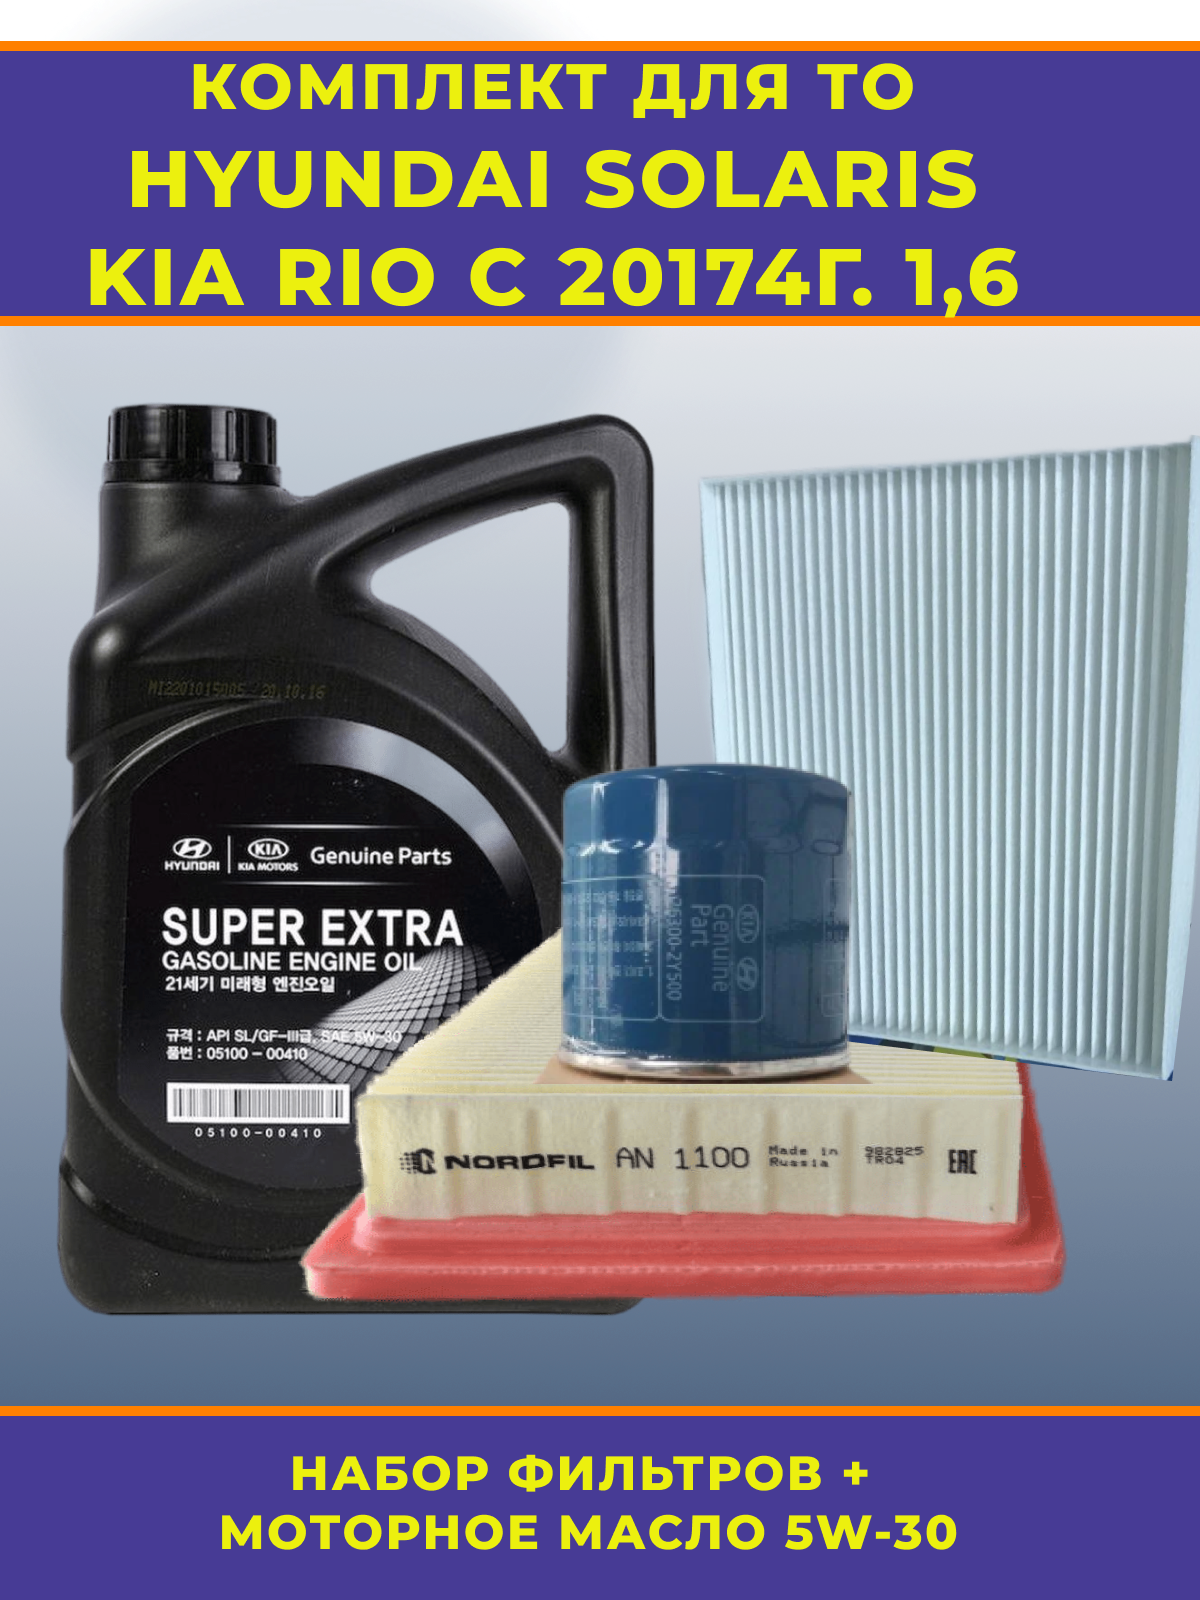 Комплект для ТО автомобилей KIA Rio и Hyundai Solaris с двигателем 1,6 литра с 2017 года